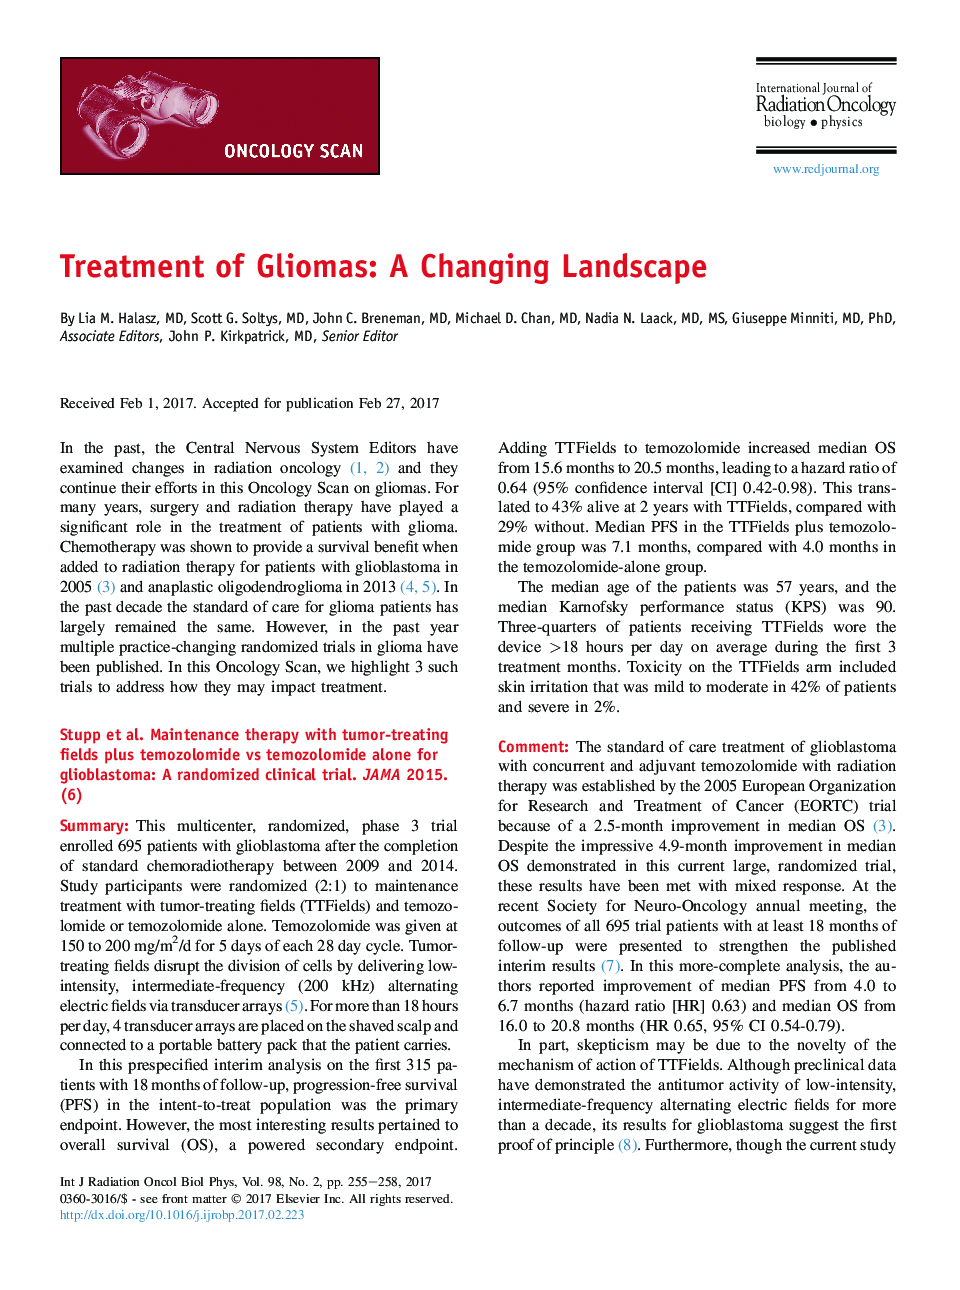 Treatment of Gliomas: A Changing Landscape